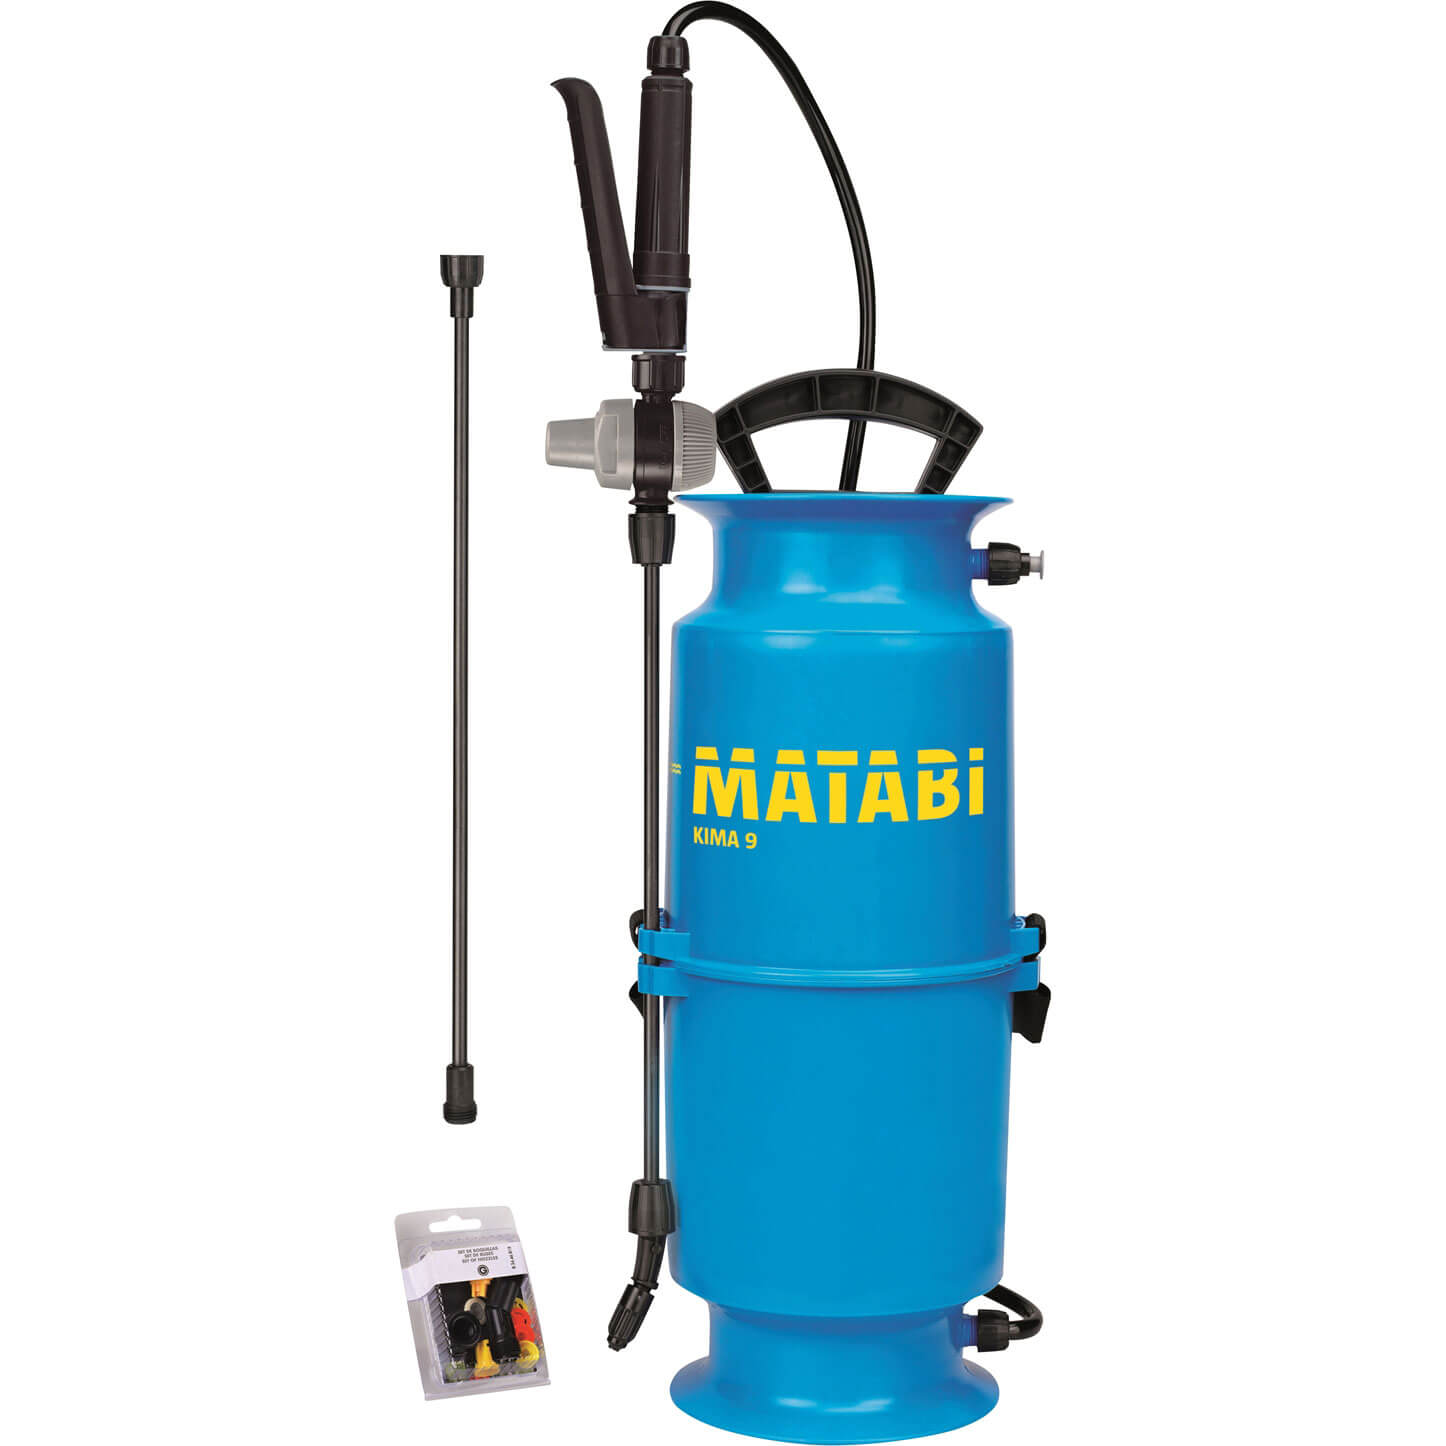 Matabi Kima 6 Sprayer + Pressure Regulator 4l